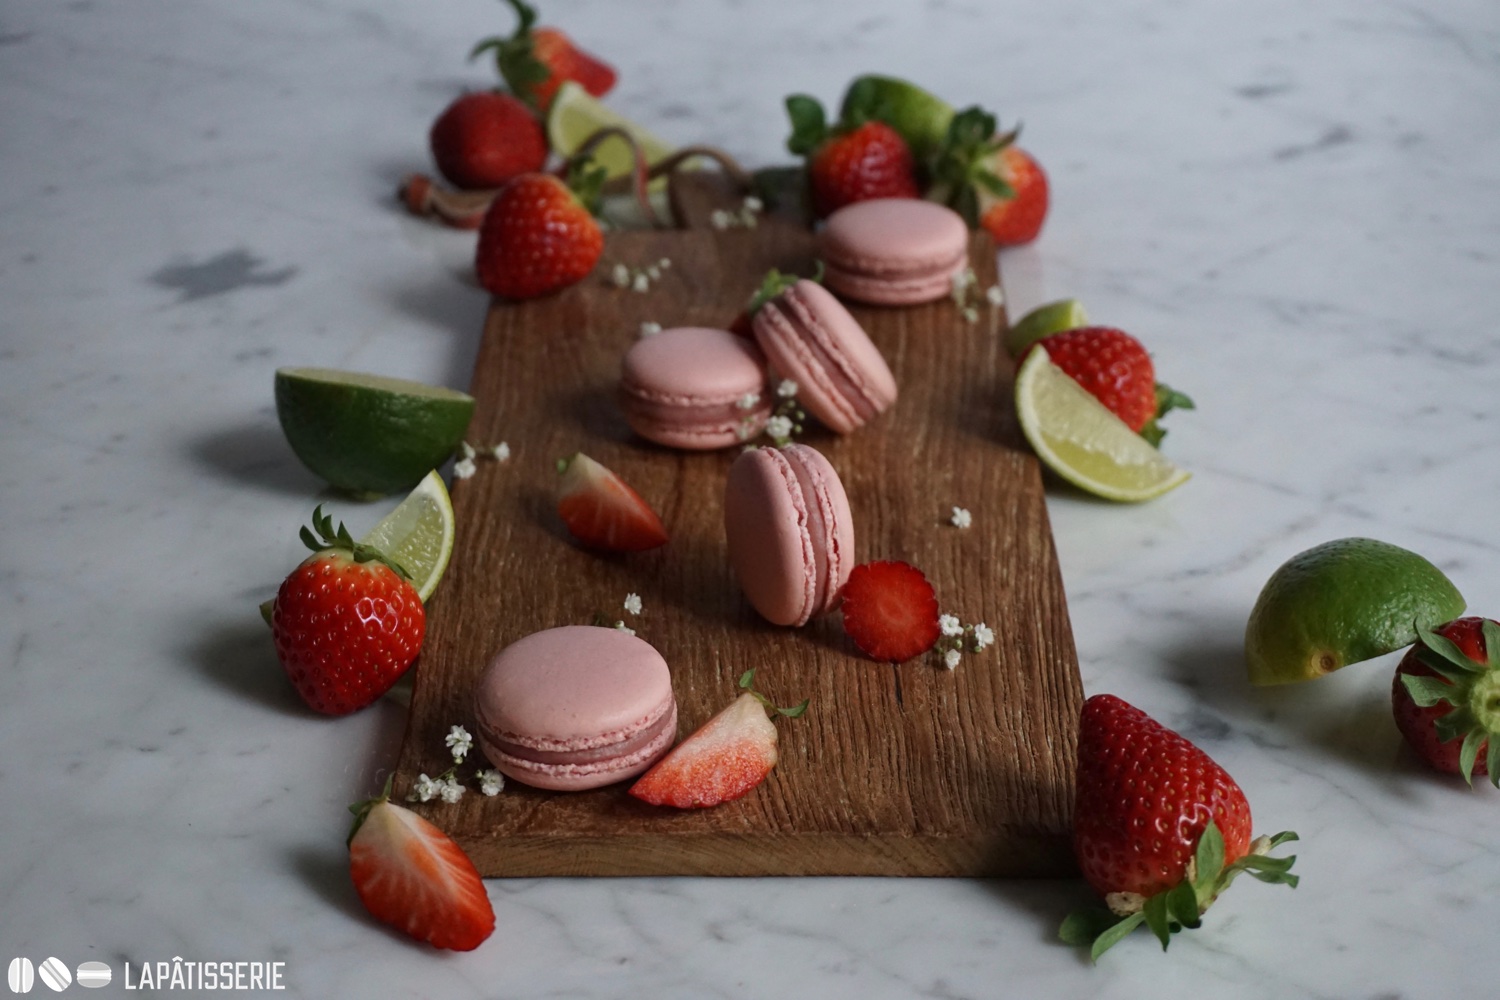 Französische Macarons mit Erdbeere und Limette. Einfach lecker im Frühling.